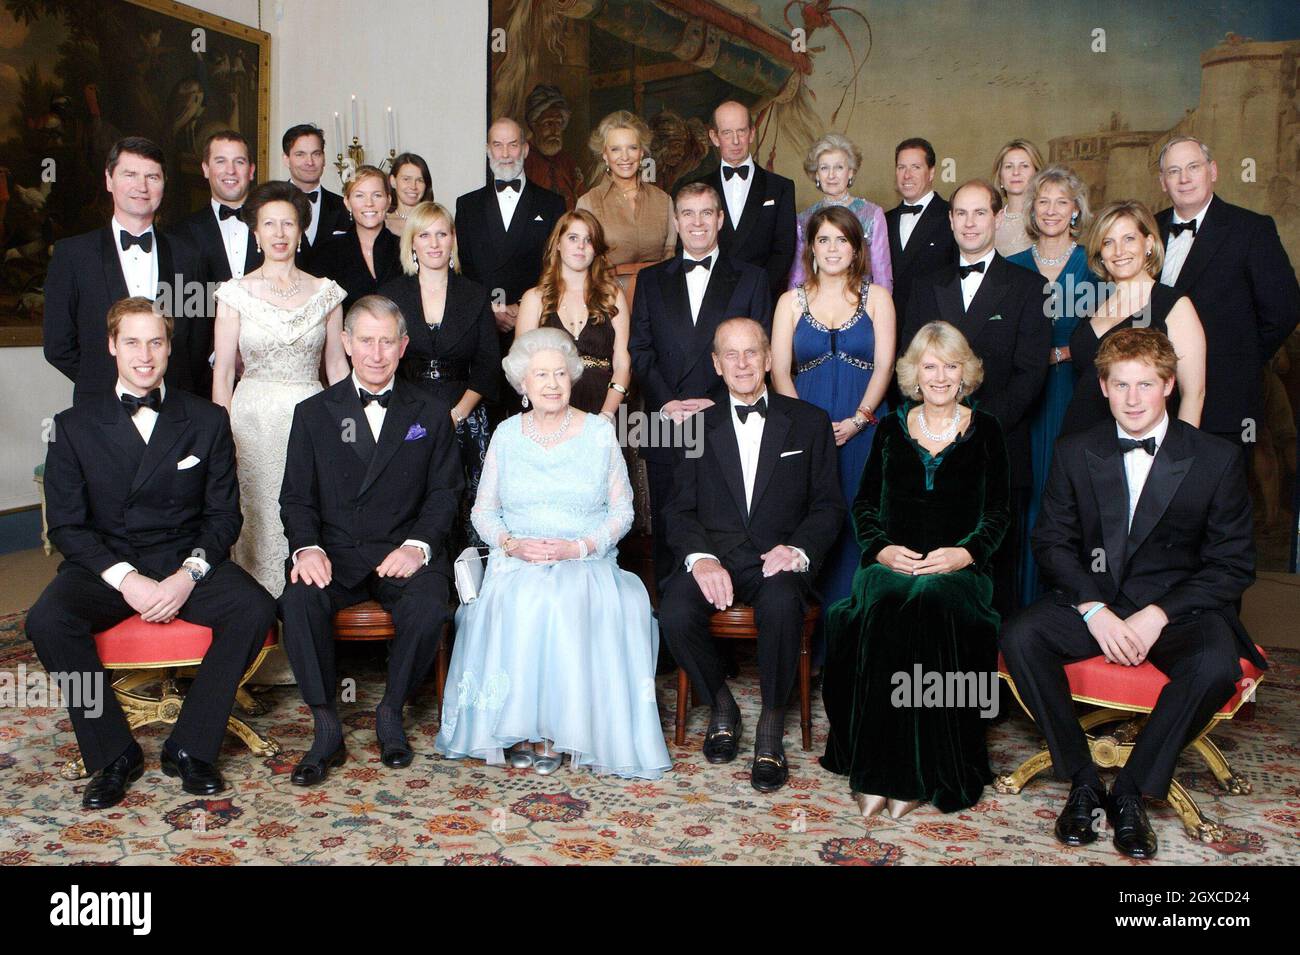 La reine Elizabeth ll et le prince Philip, duc d'Édimbourg, sont rejoints à la Clarence House par des membres de la famille royale lors d'un dîner organisé par le prince de Galles et la duchesse de Cornwall pour souligner le prochain anniversaire de mariage en diamant de la reine Elizabeth II et du prince Philip,Duc d'Édimbourg. Banque D'Images